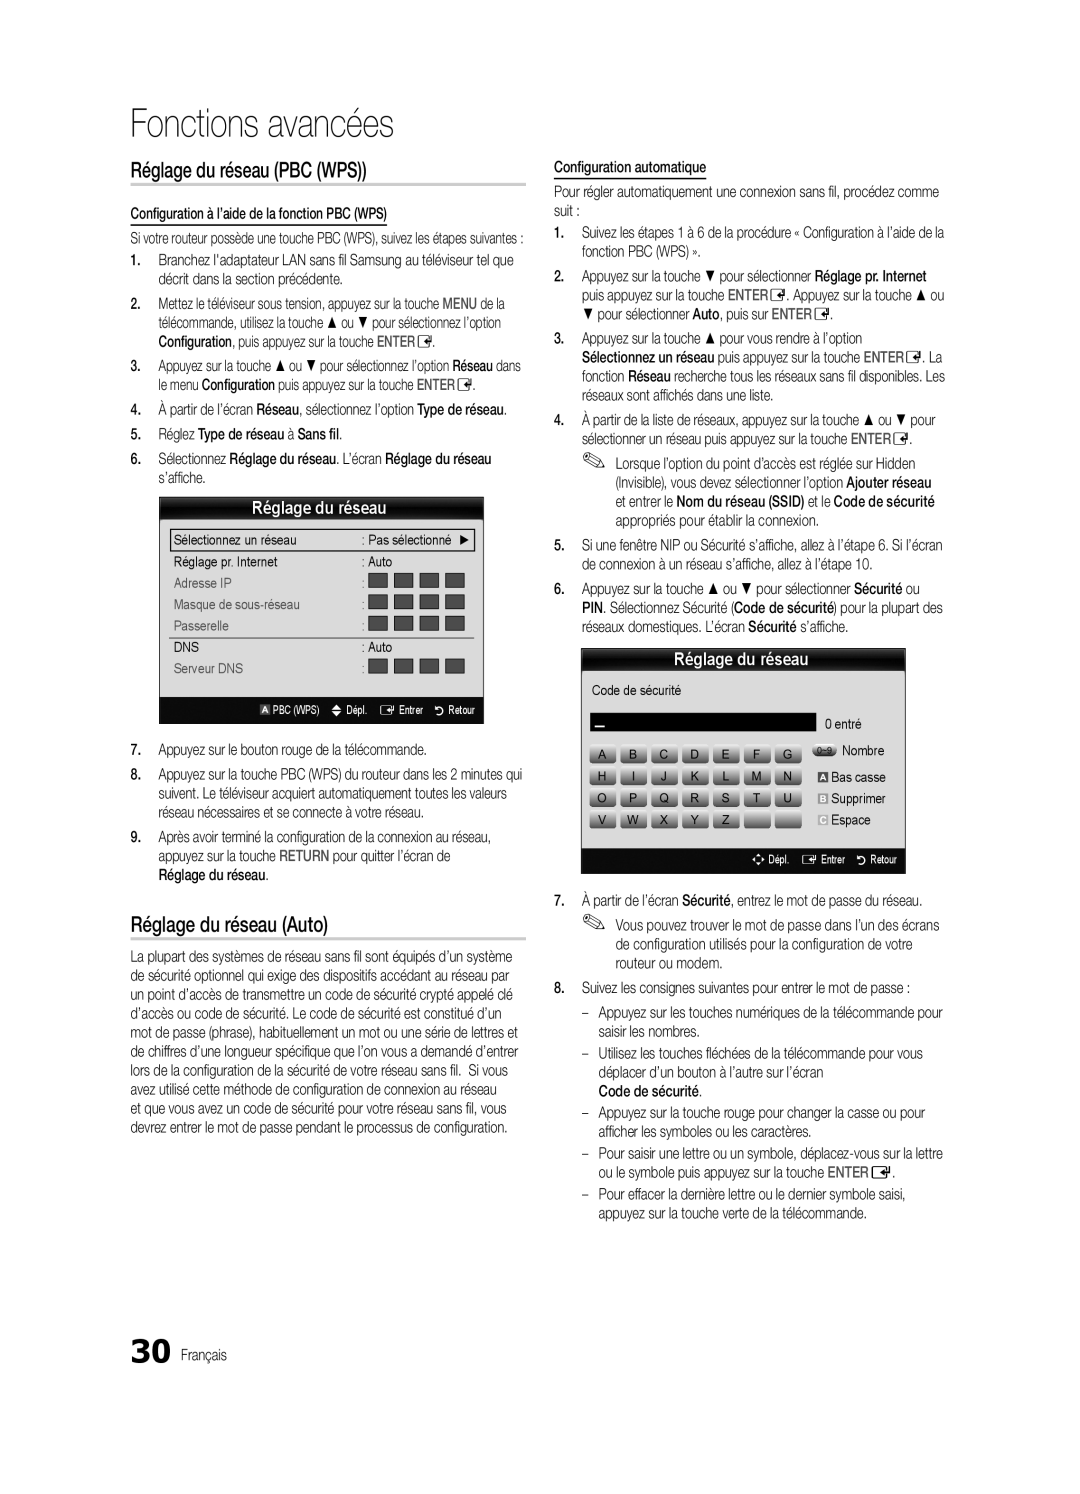 Samsung BN68-02711B-04, UC6500-ZC user manual Réglage du réseau PBC WPS, Fonctions avancées, Réglage du réseau Auto 